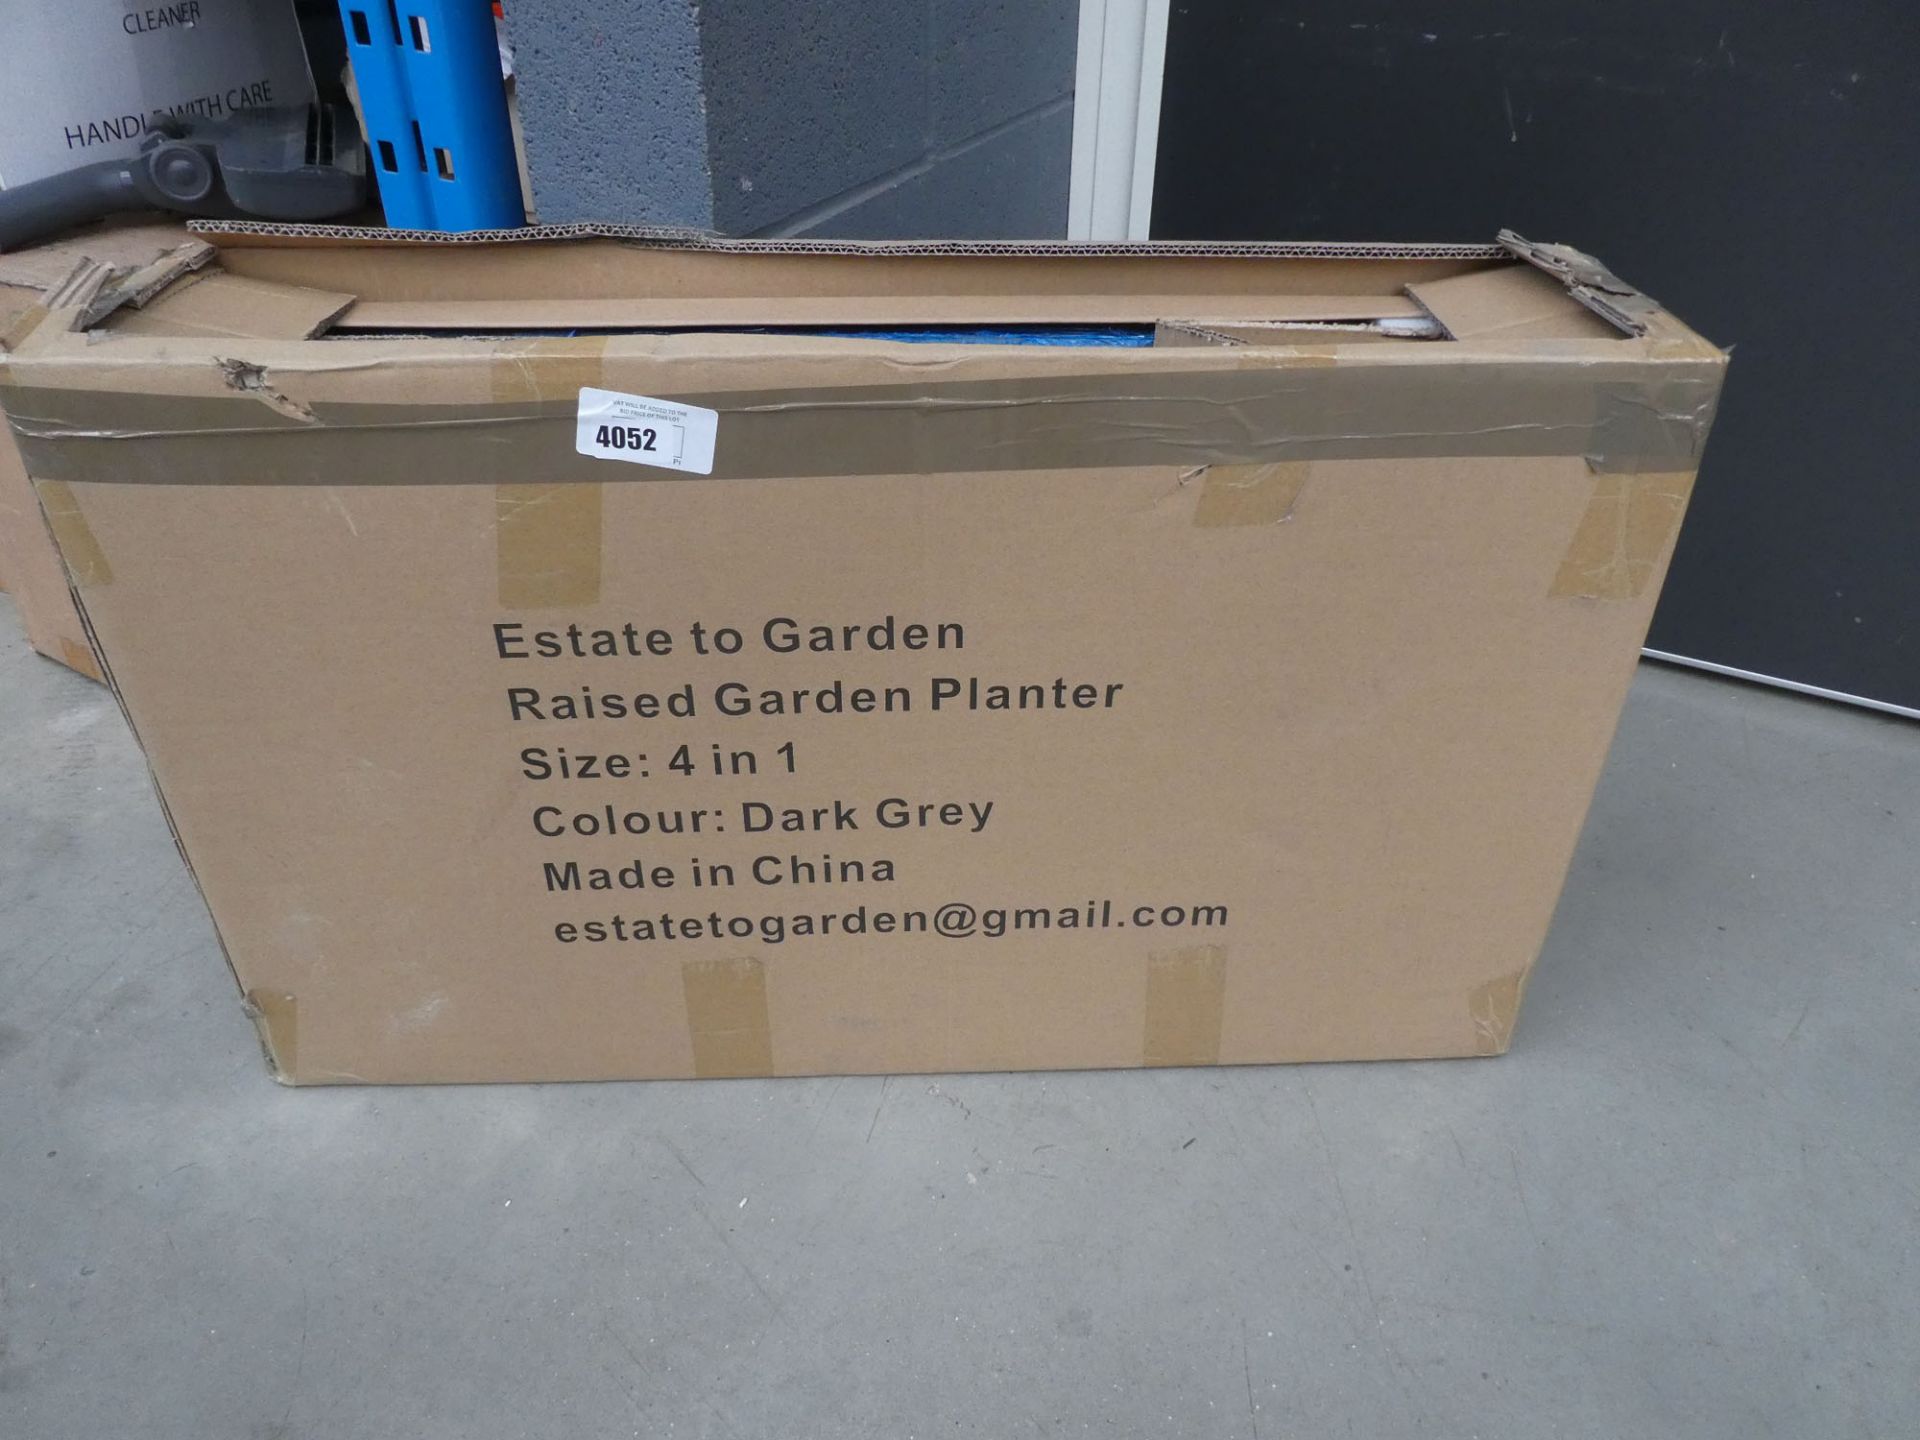 Box containing a metal flatpack garden planter